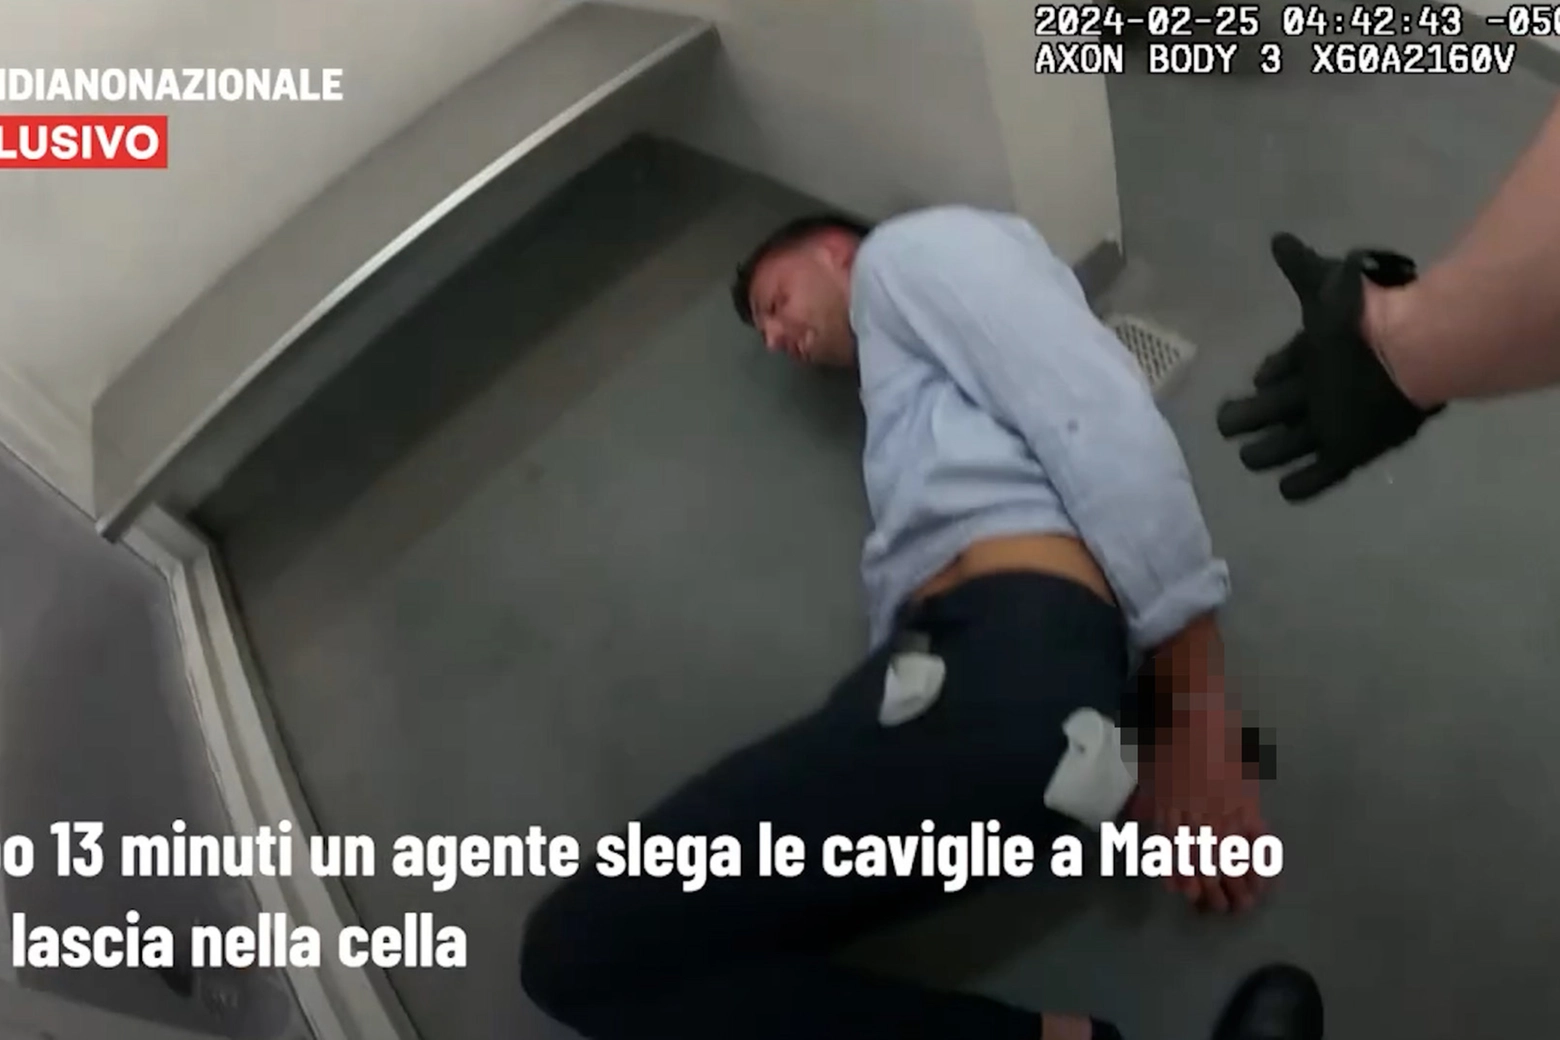 Un frame del video che mostra le violenze subite da Matteo Falcinelli